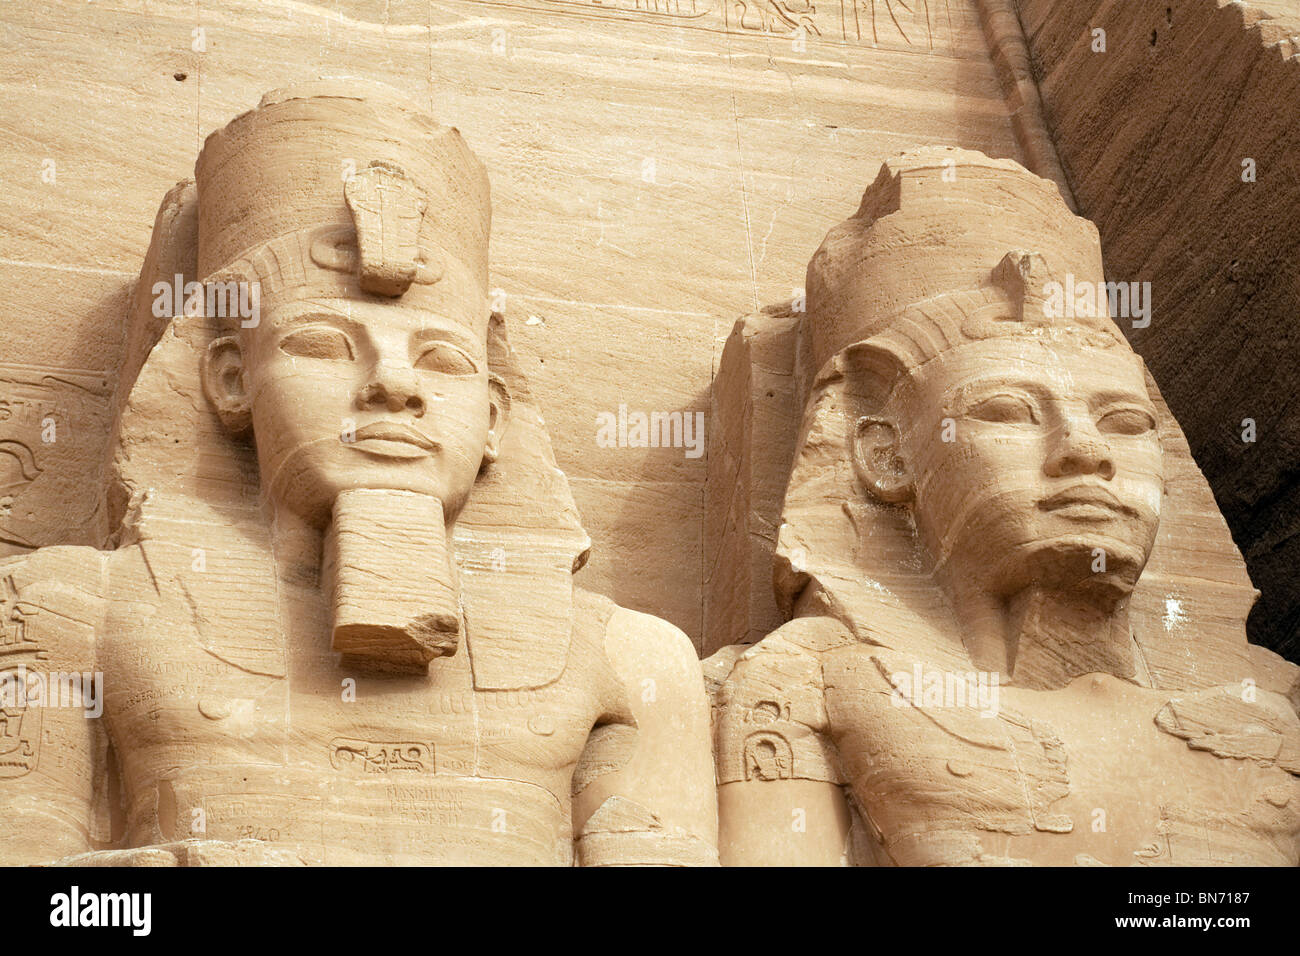 Antico Egitto; Tempio di Abu Simbel; primo piano delle teste di due delle statue di Ramses 2 al Grande Tempio, Abu Simbel, Alto Egitto Africa Foto Stock